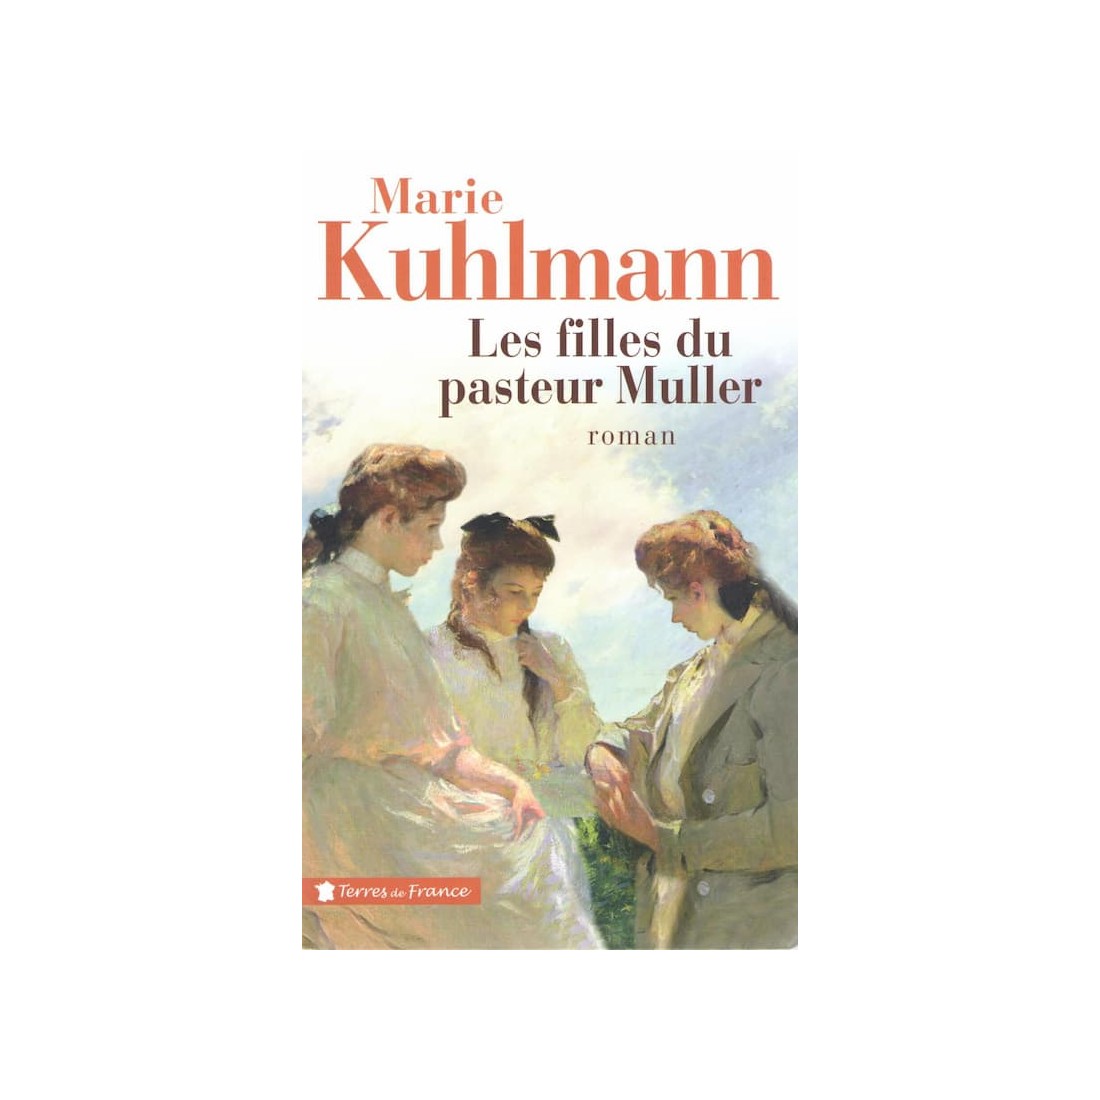 Les filles du pasteur Kuhlmann - 374 pages